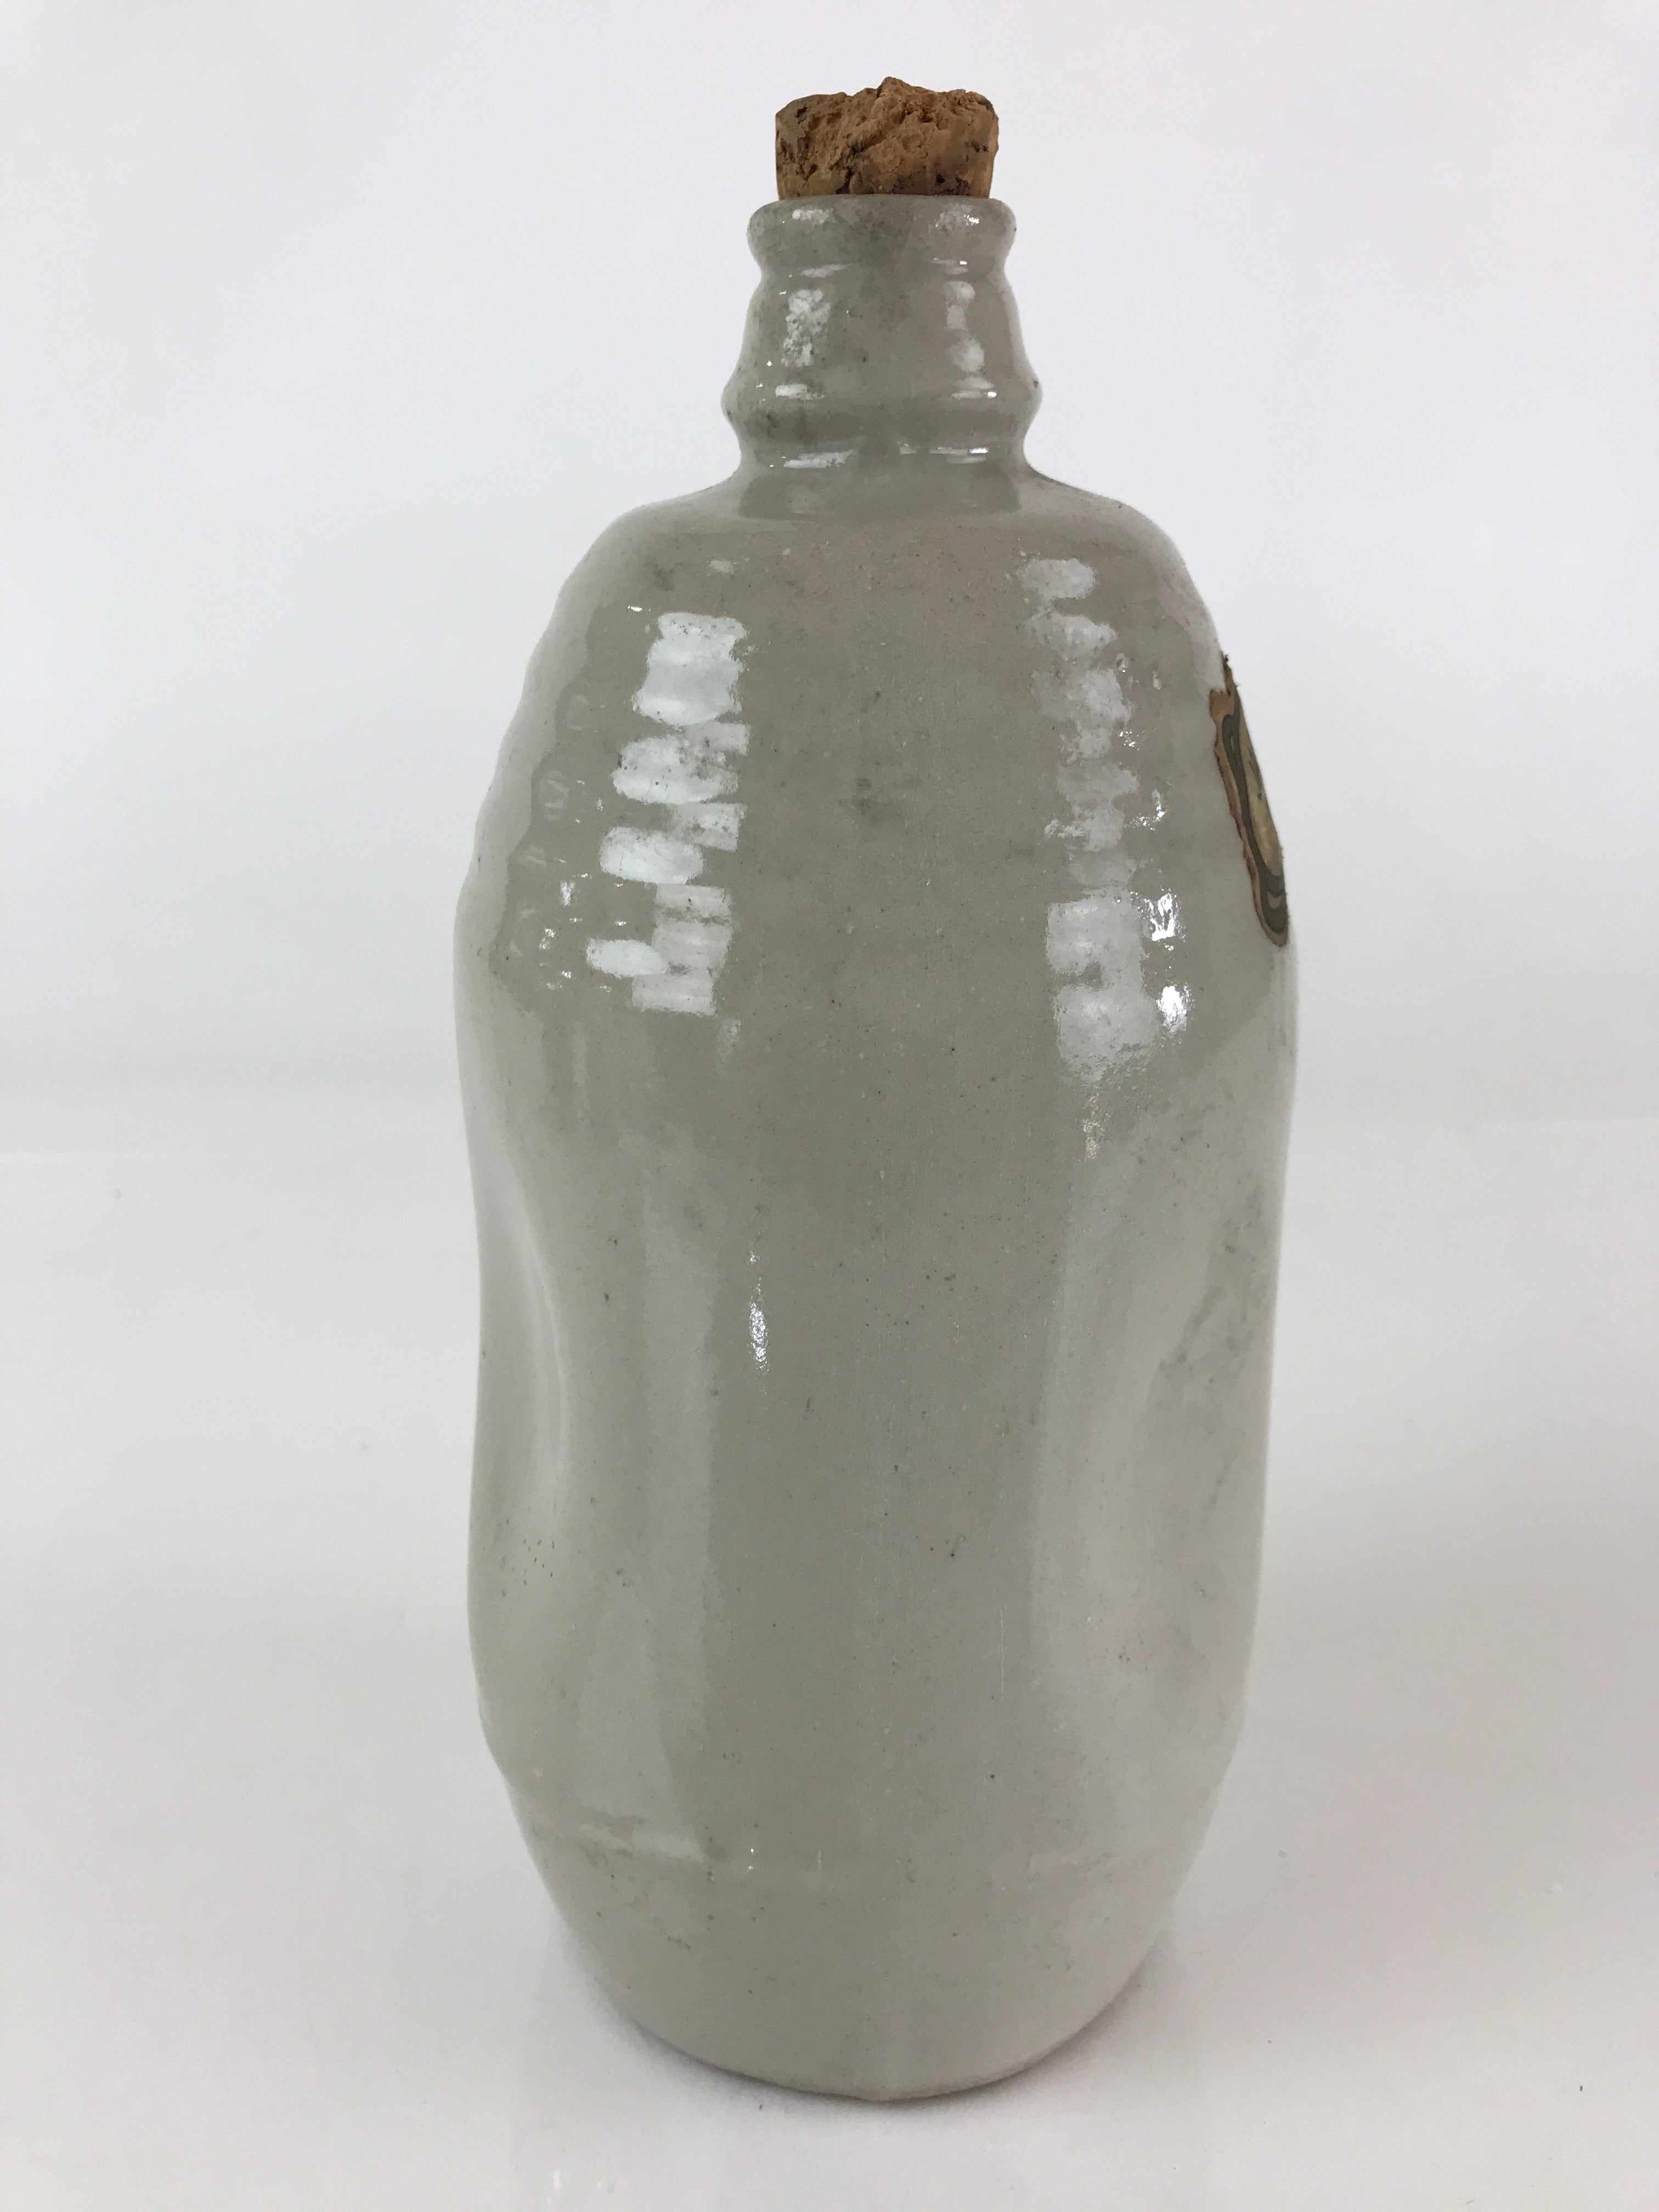 Japanese Ceramic Sake Bottle Vtg Pottery Tokkuri Gray Sweet Sake TS473